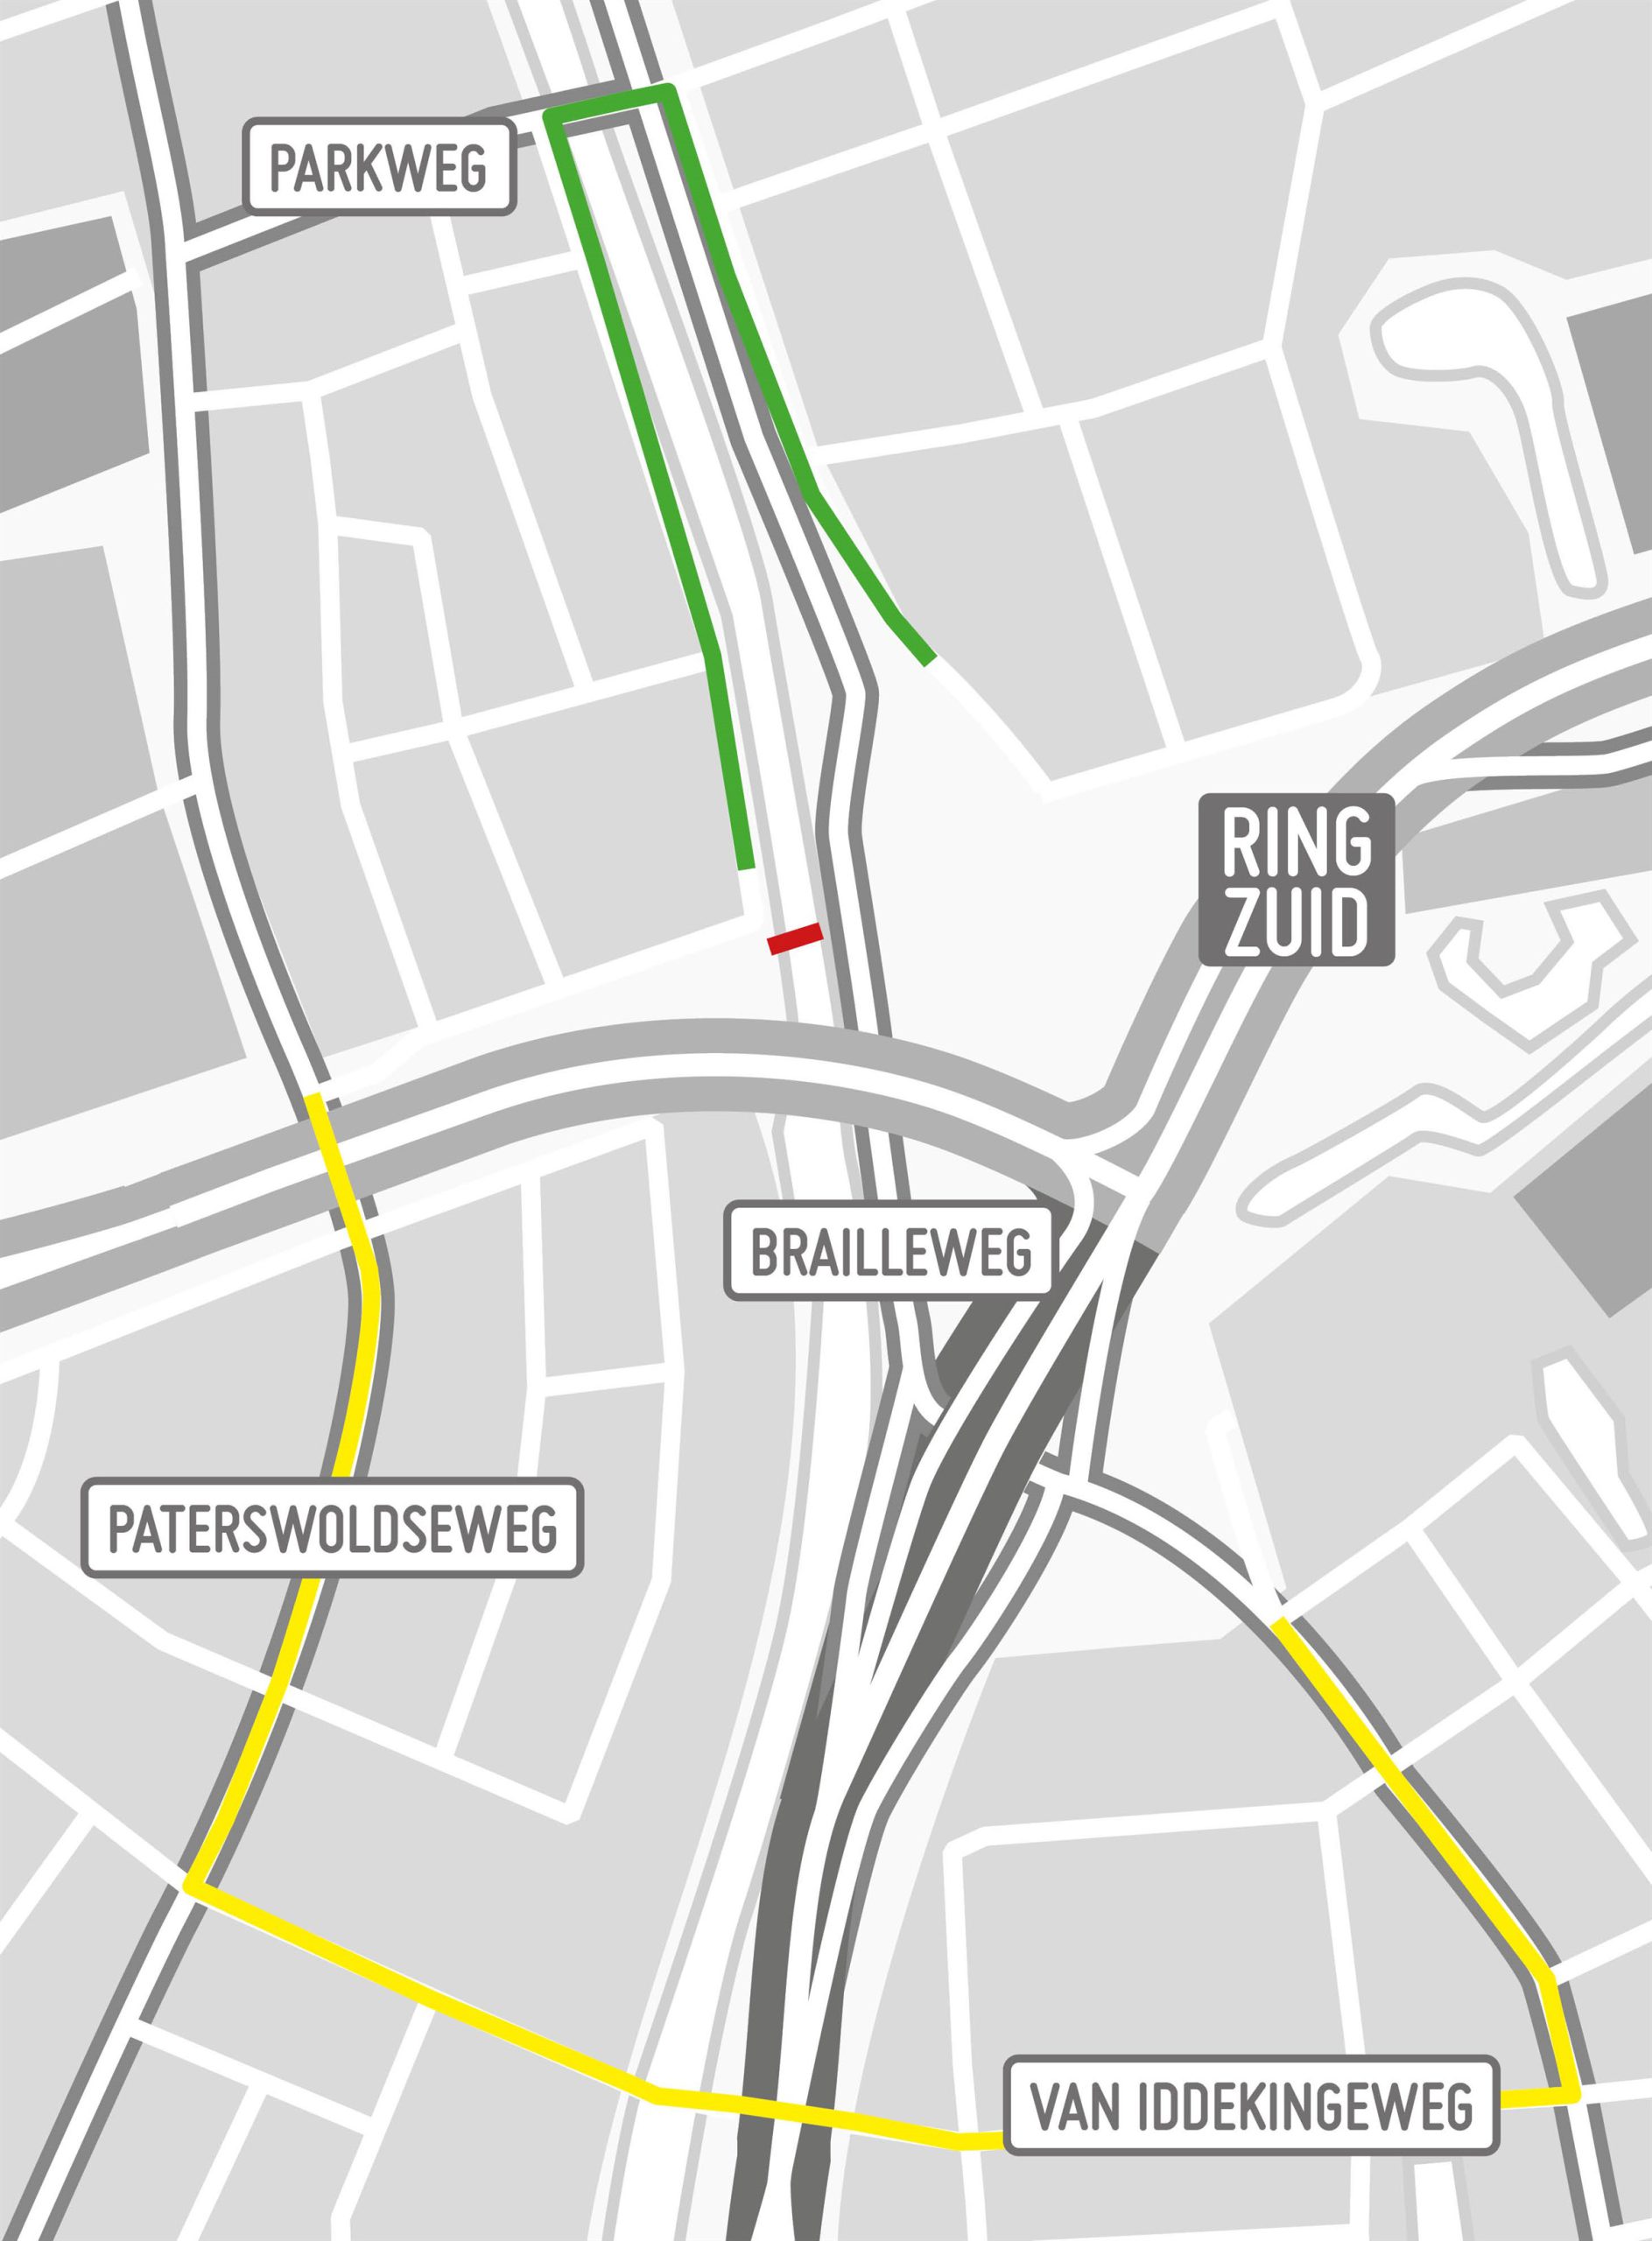 De Muntingbrug (rood) is tot het voorjaar van 2023 dicht. Fietsers en voetgangers kunnen via de Parkbrug (groene route) of de Van Iddekingeweg.